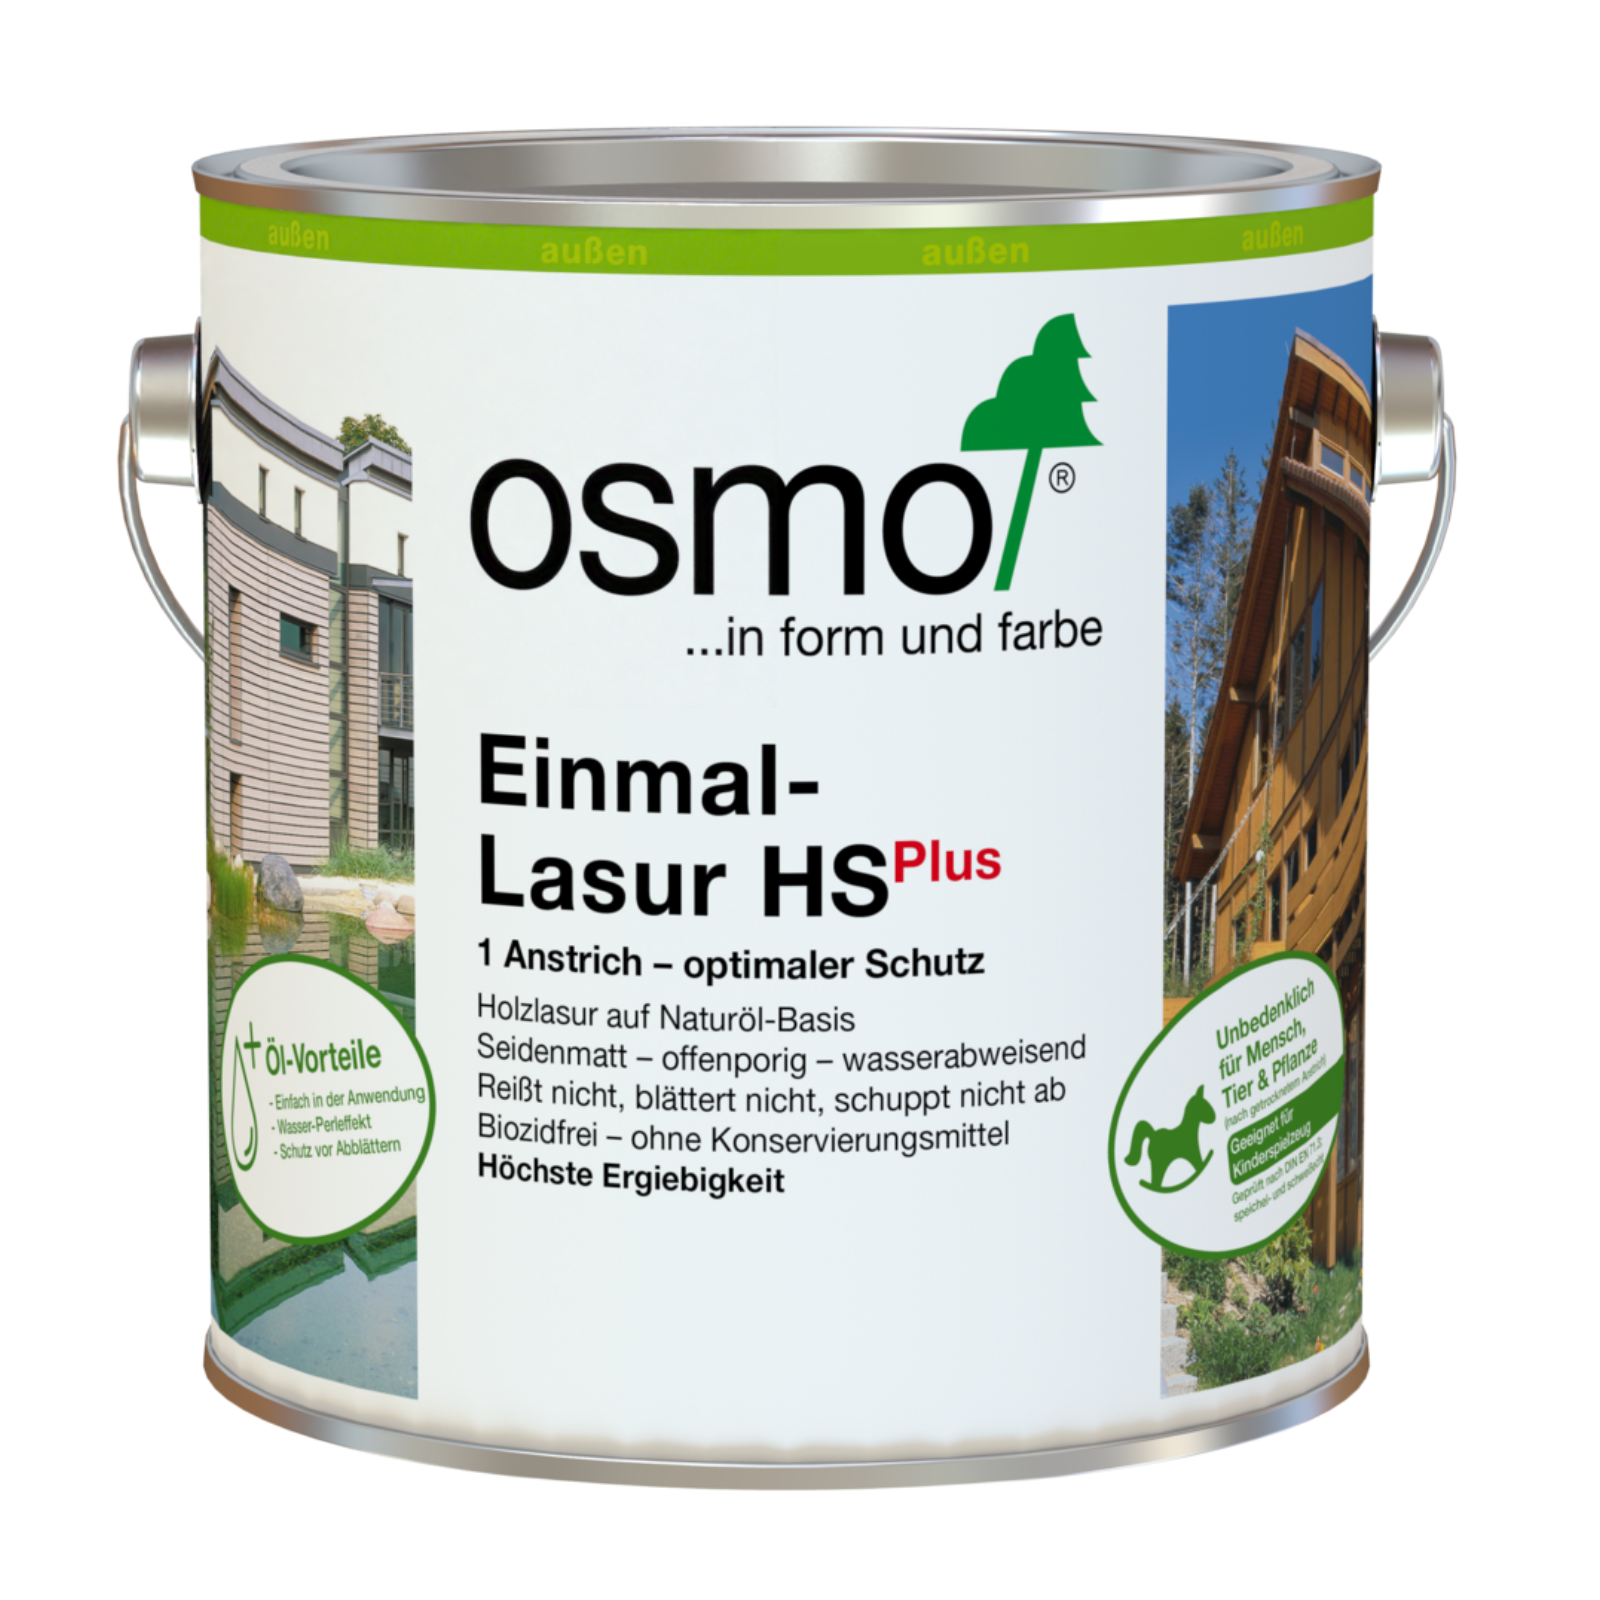 Osmo Einmal-Lasur HS Plus